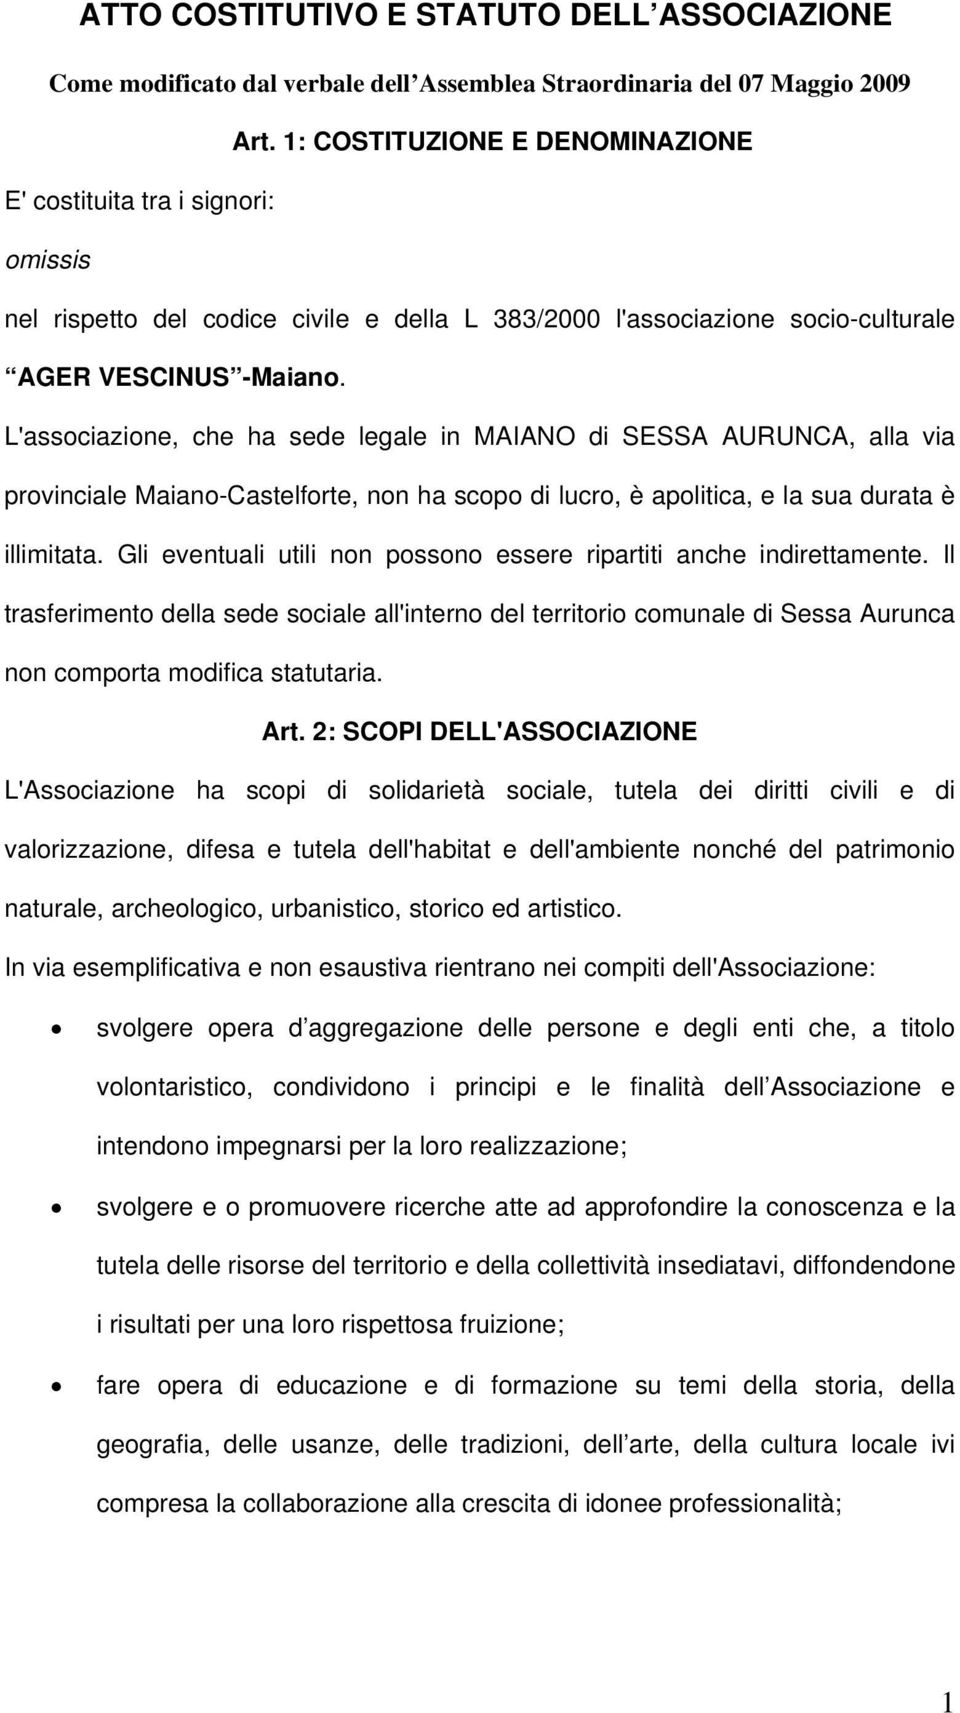 L'associazione, che ha sede legale in MAIANO di SESSA AURUNCA, alla via provinciale Maiano-Castelforte, non ha scopo di lucro, è apolitica, e la sua durata è illimitata.